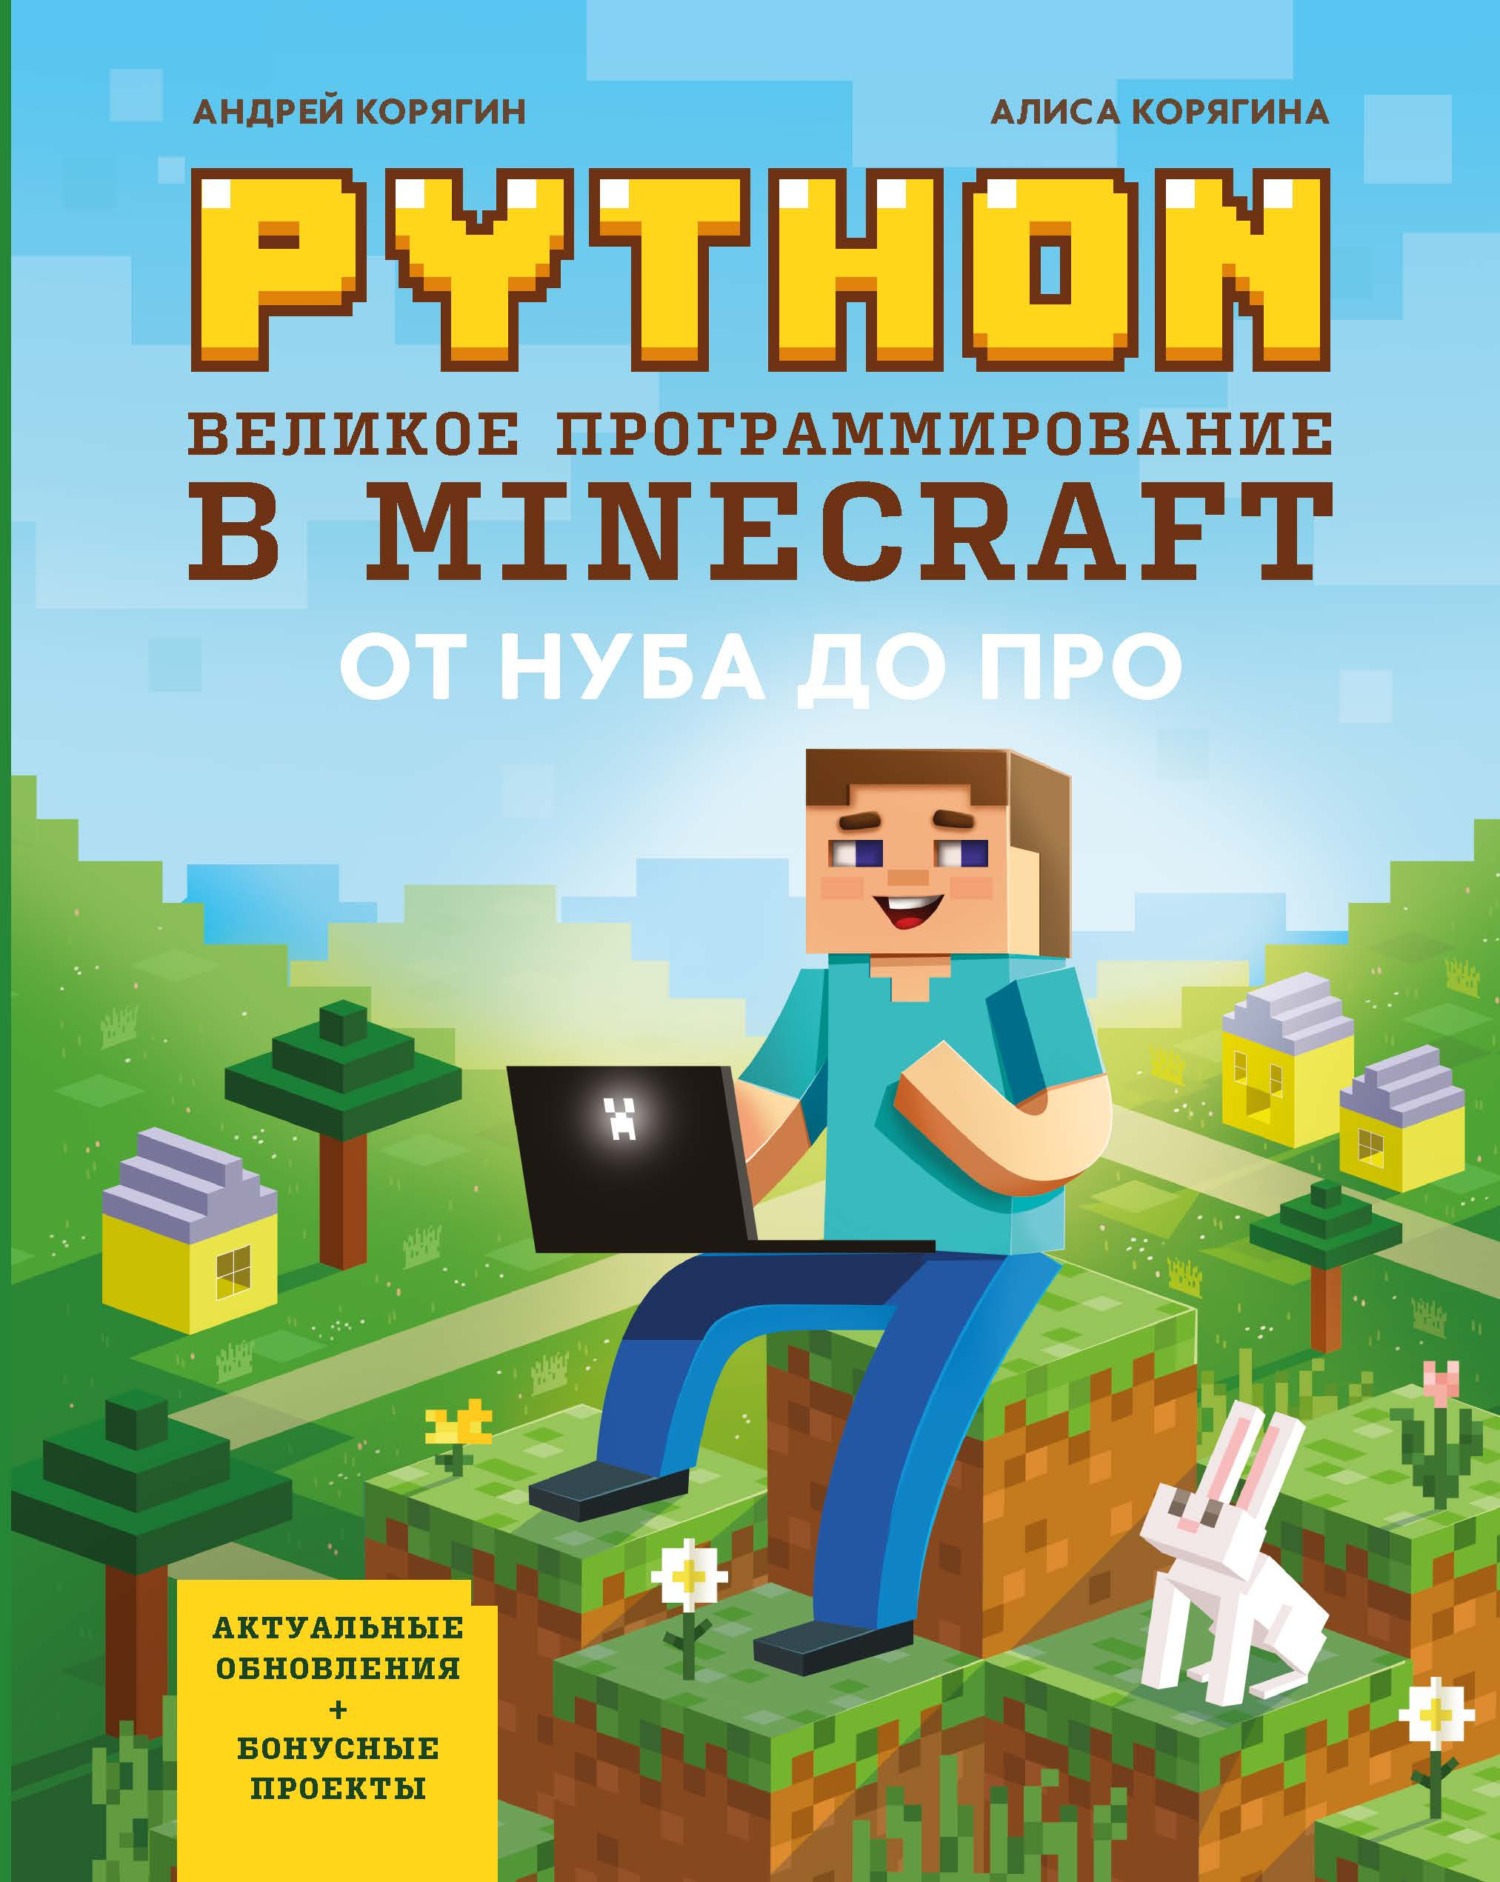 Книга Гений программирования Python. Великое программирование в Minecraft созданная А. В. Корягин, А. В. Корягина может относится к жанру детская познавательная и развивающая литература, программирование. Стоимость электронной книги Python. Великое программирование в Minecraft с идентификатором 65989169 составляет 449.00 руб.